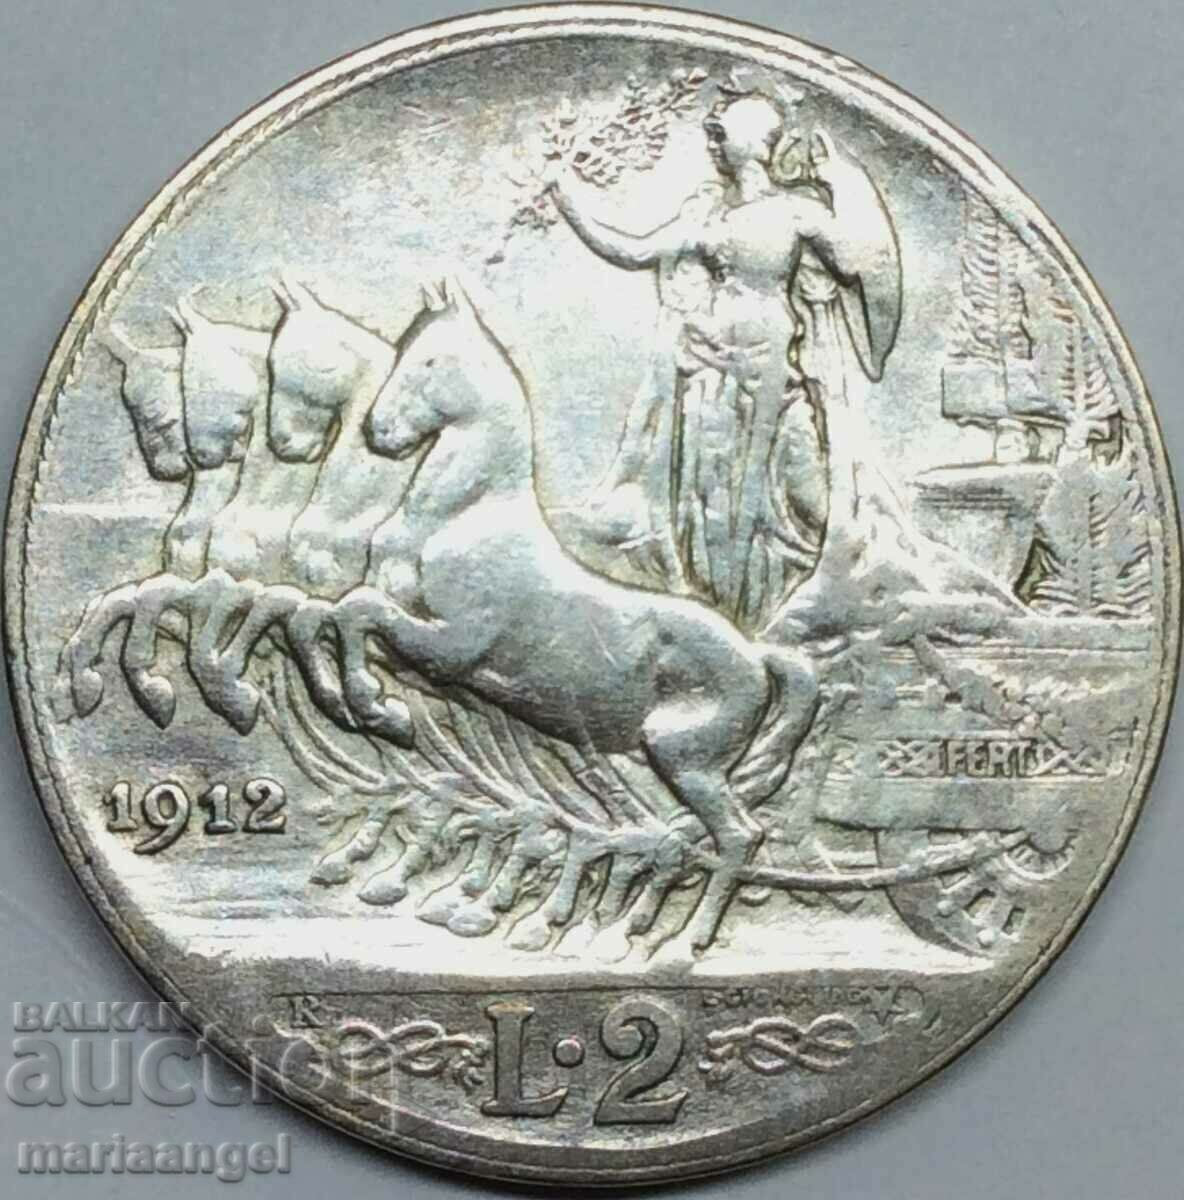 2 Lire 1912 Italy Silver - Rare